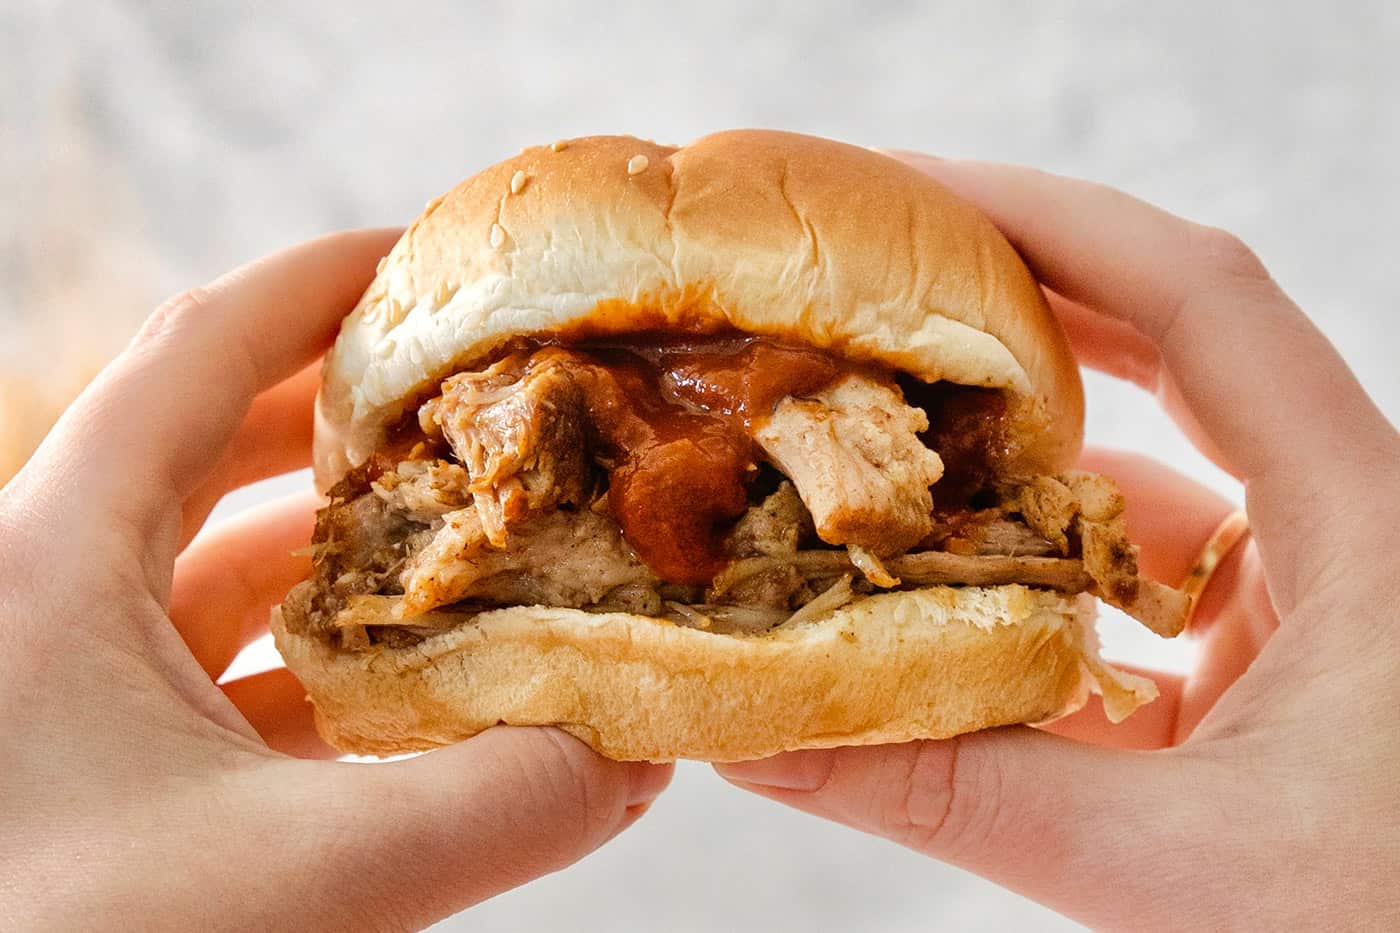 hands holding a bbq pork sandwich